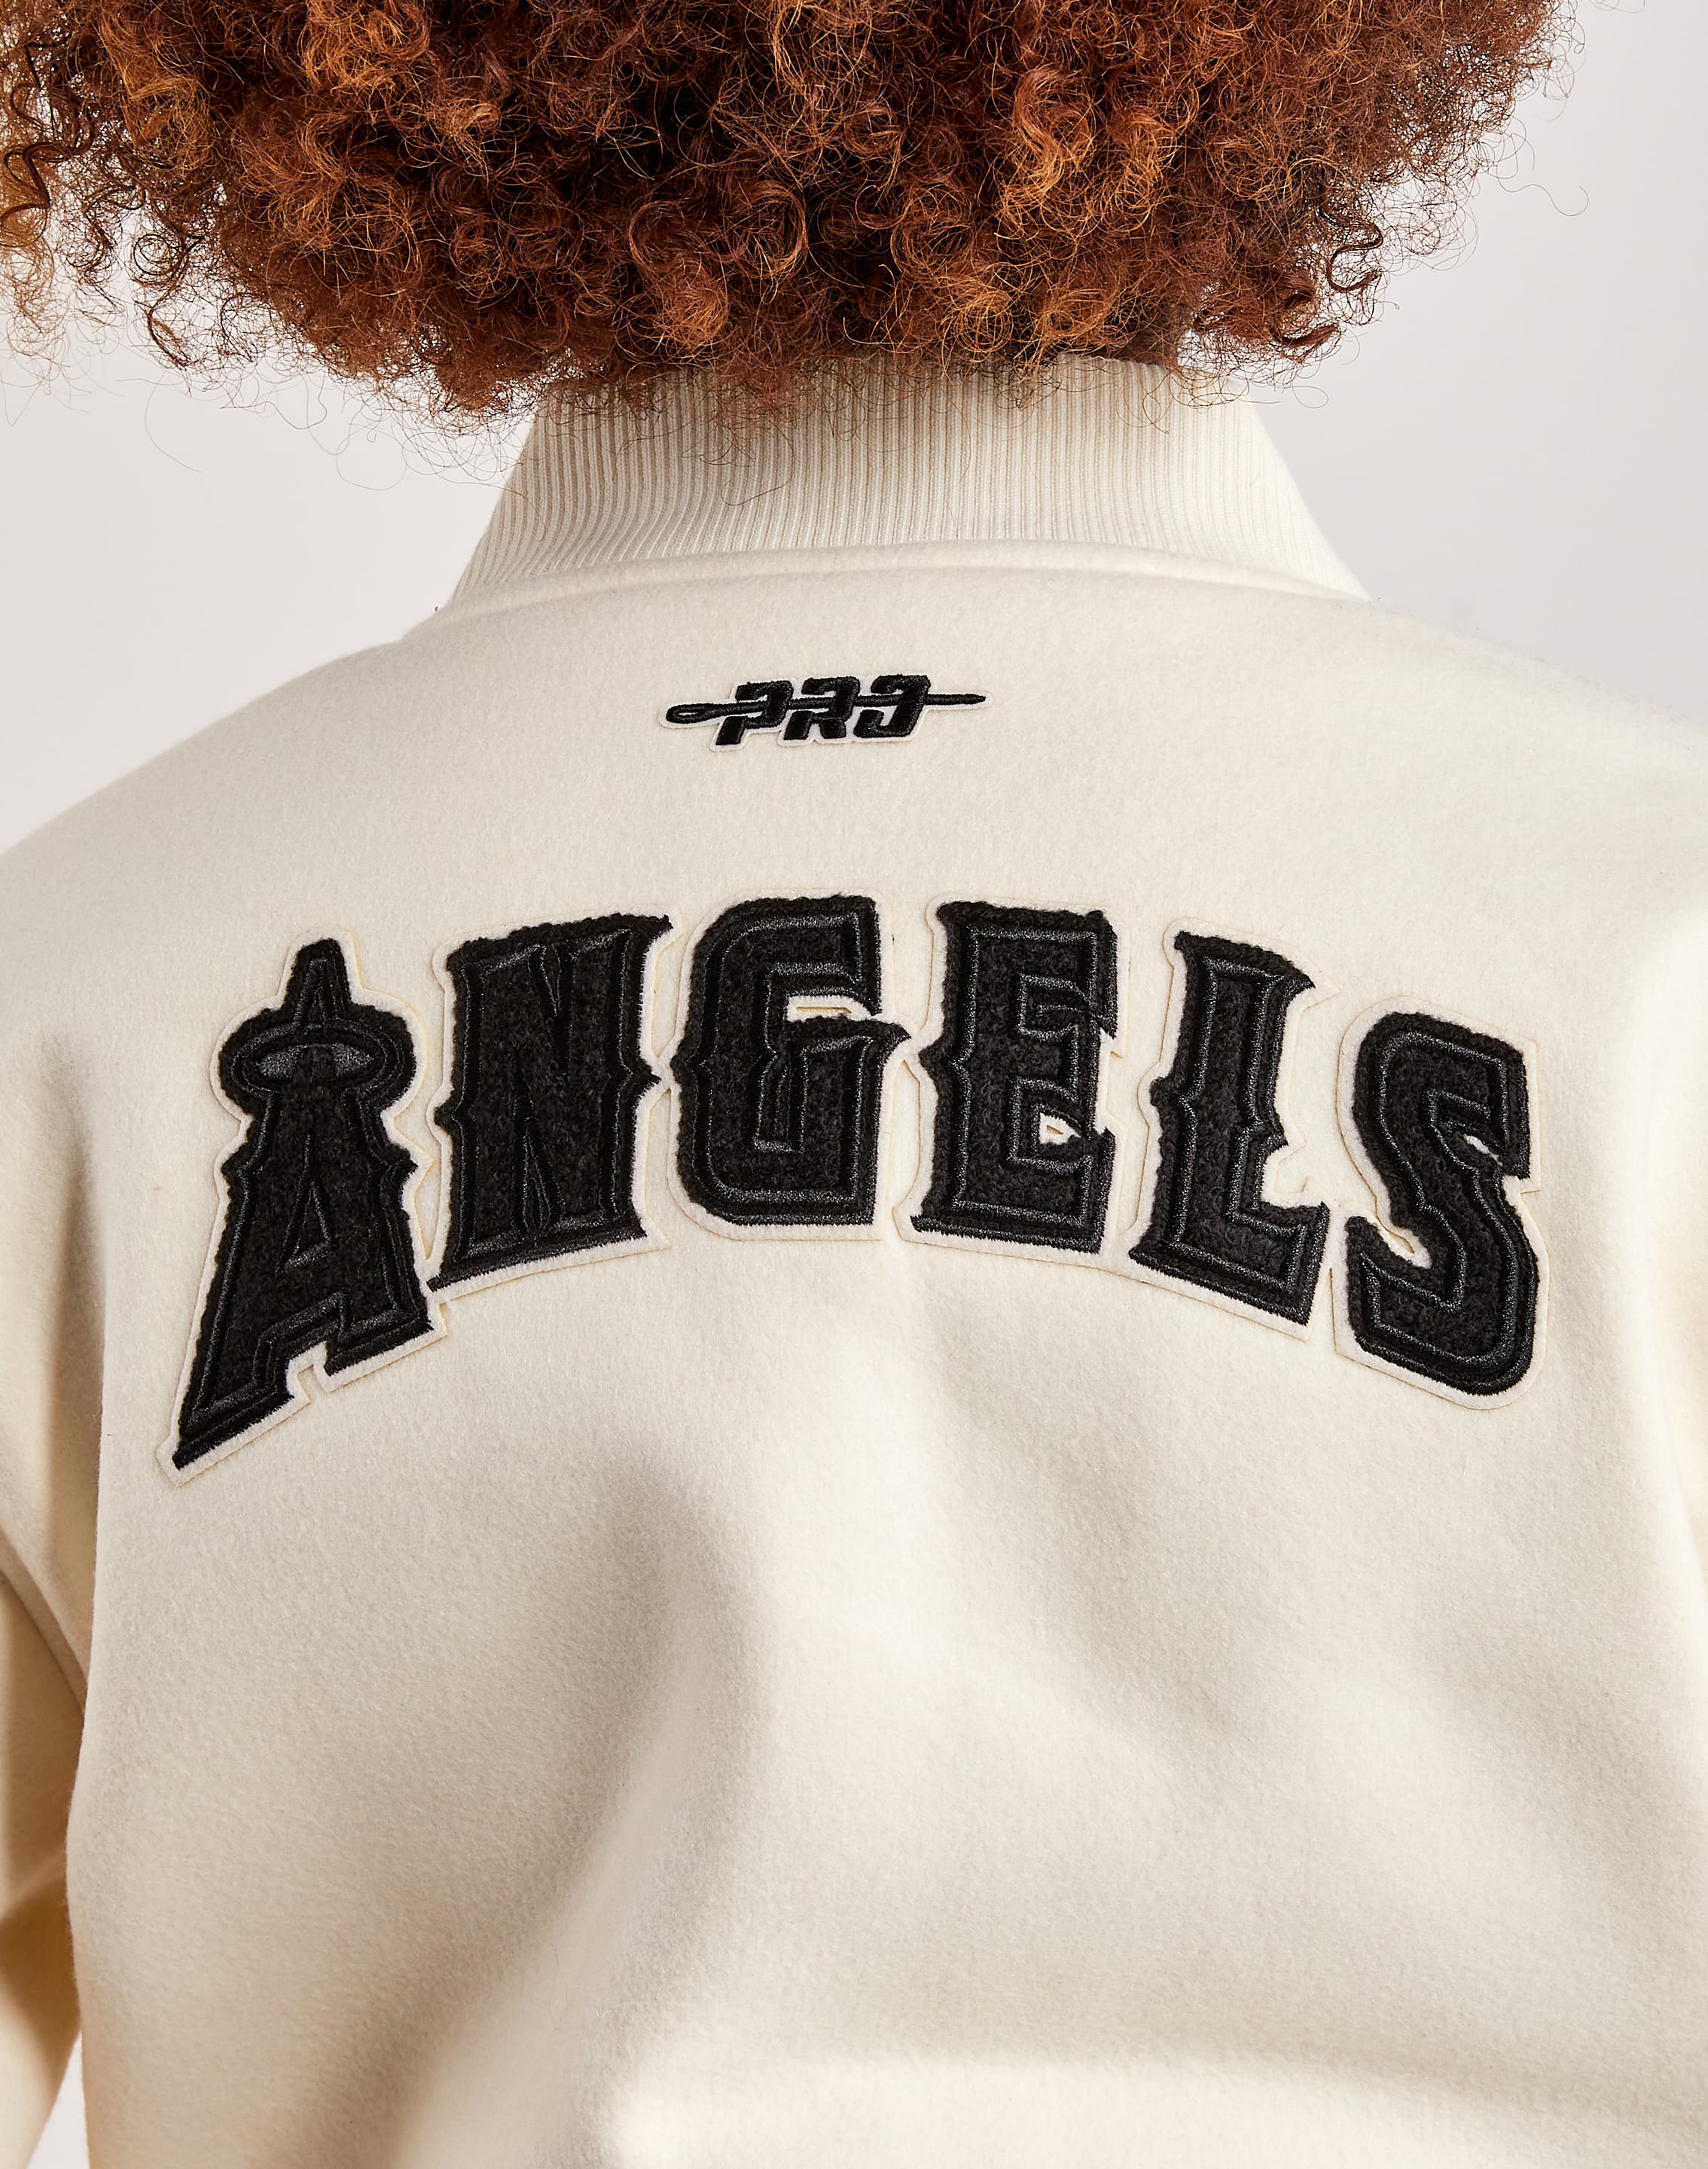 Letterman Wool Los Angeles Angels Red Varsity Jacket - Jacket Makers